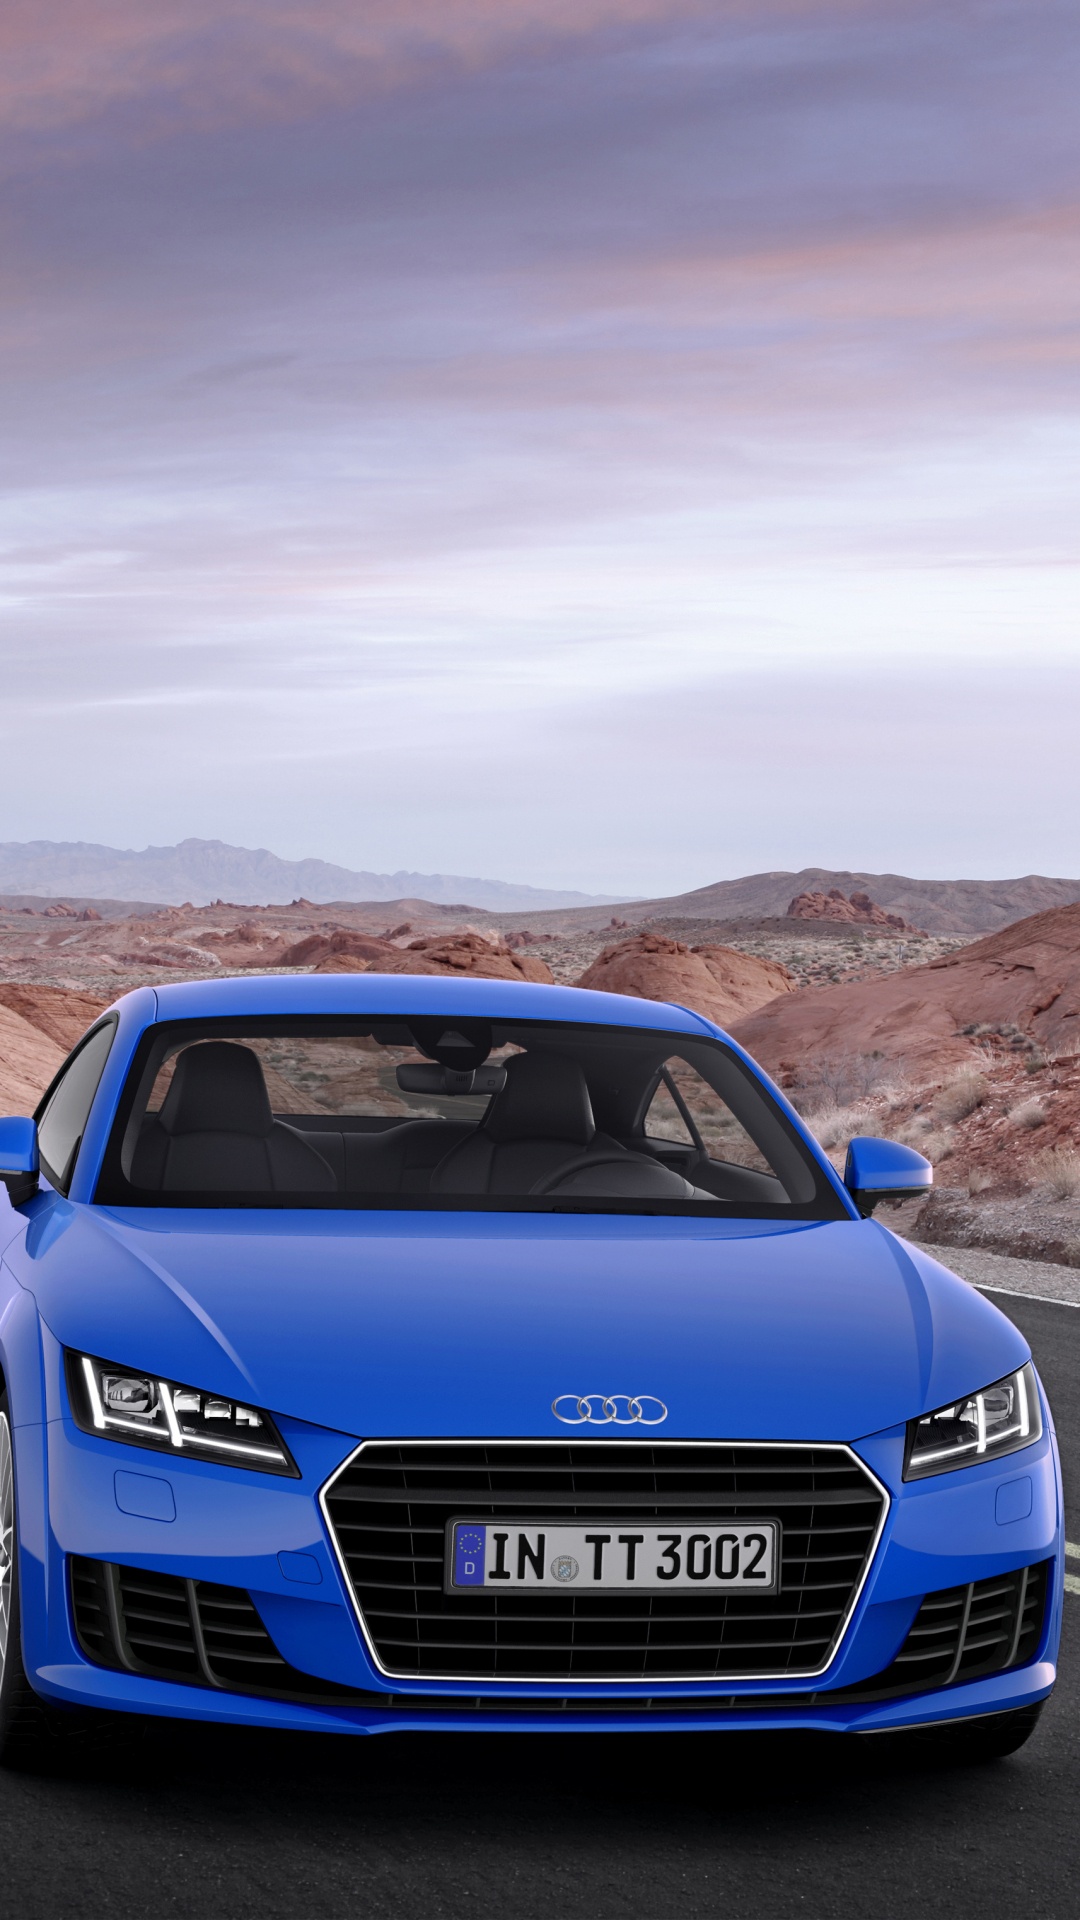 Bleu Audi a 4 Sur Route Pendant la Journée. Wallpaper in 1080x1920 Resolution